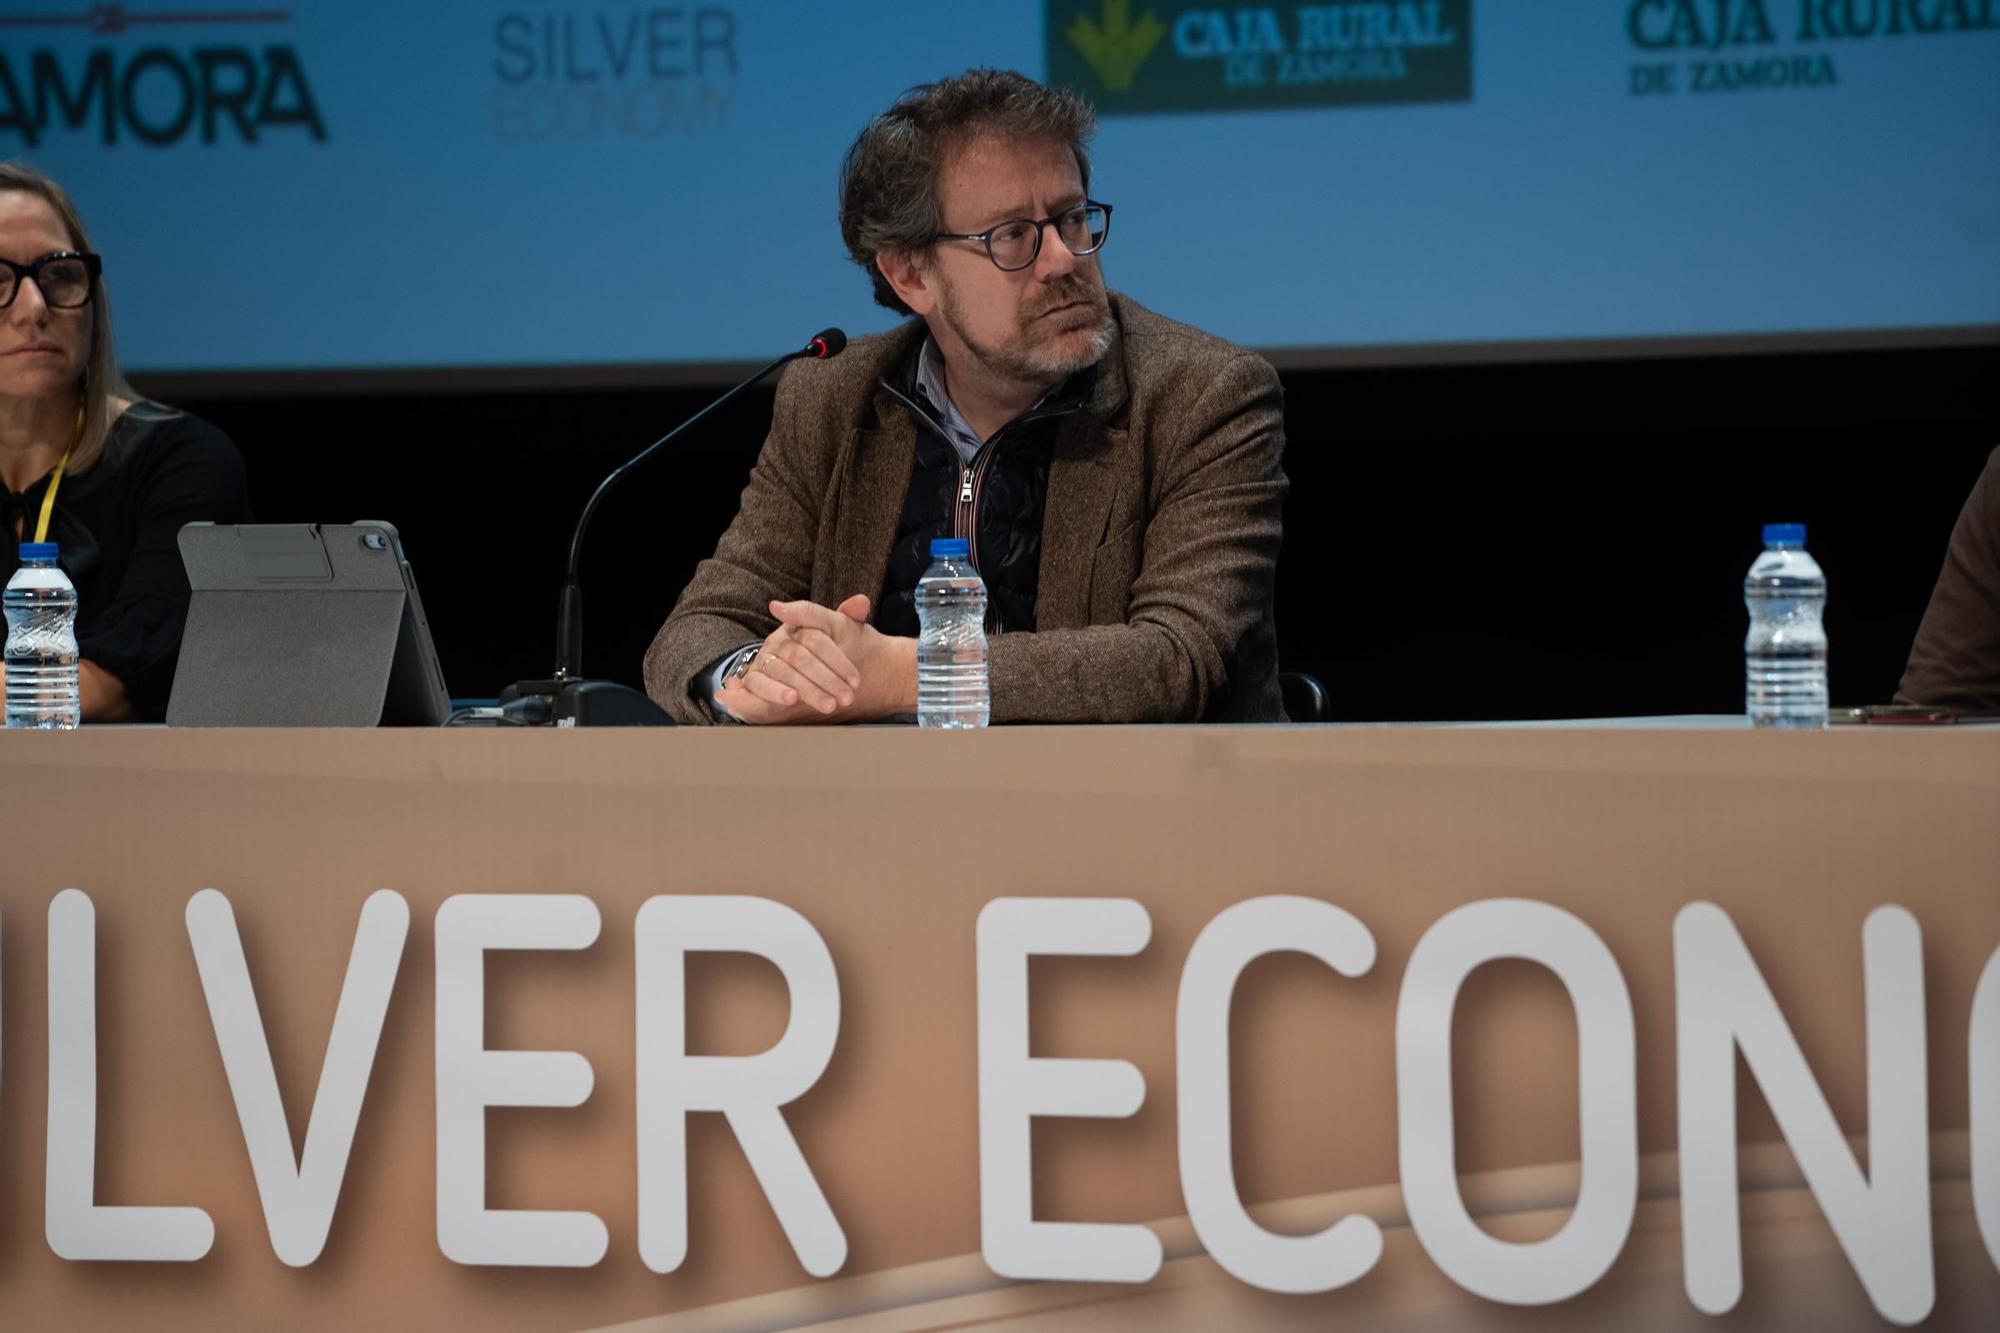 GALERÍA | Así ha sido el segundo día del congreso Silver Economy de Zamora